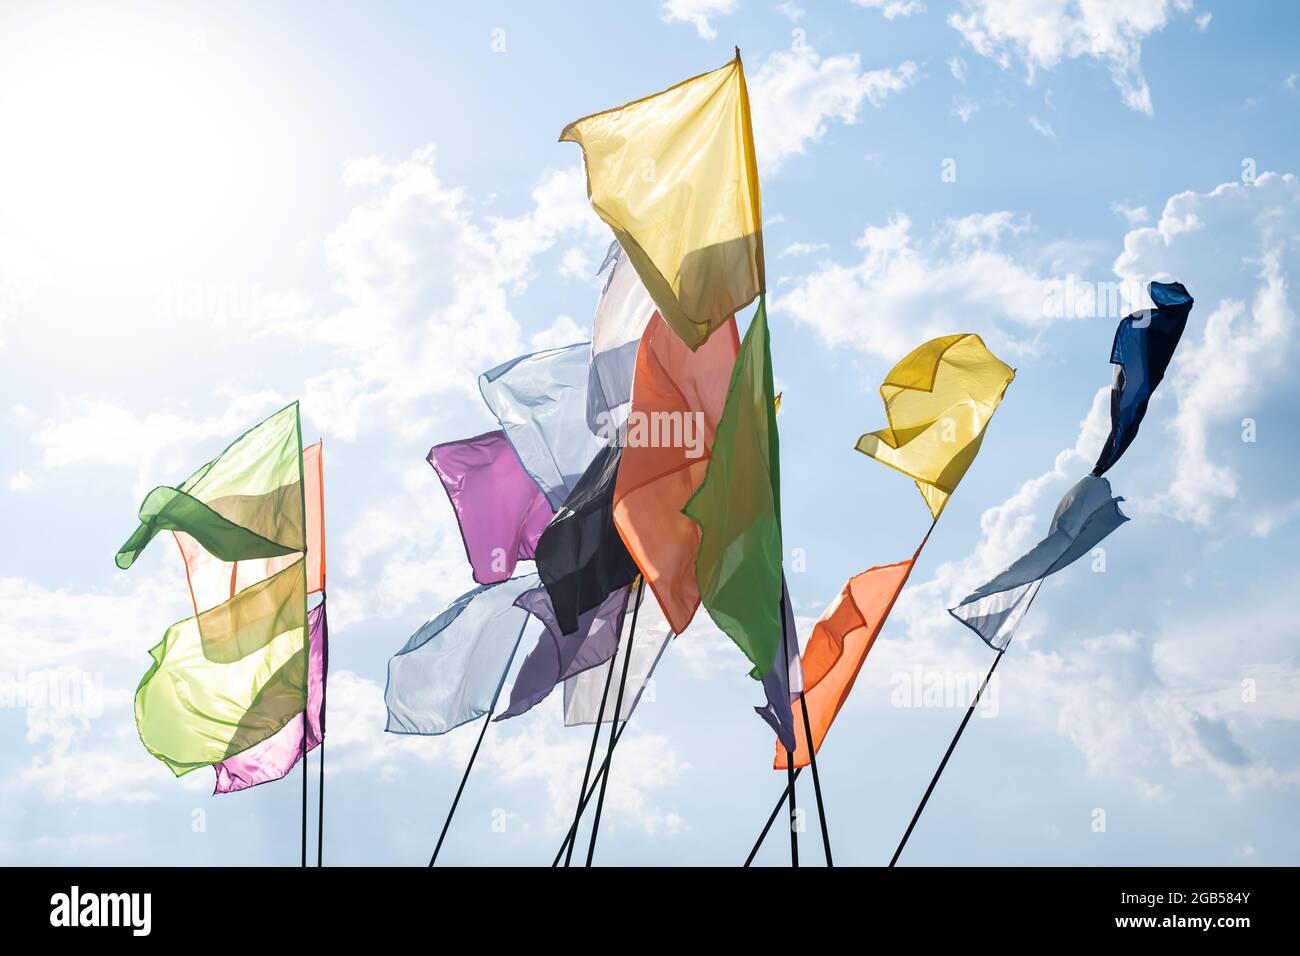 Bunte Fahnen flattern auf dem blauen Himmel Hintergrund. Festivalfeier und Party-Karneval-Konzept Stockfoto